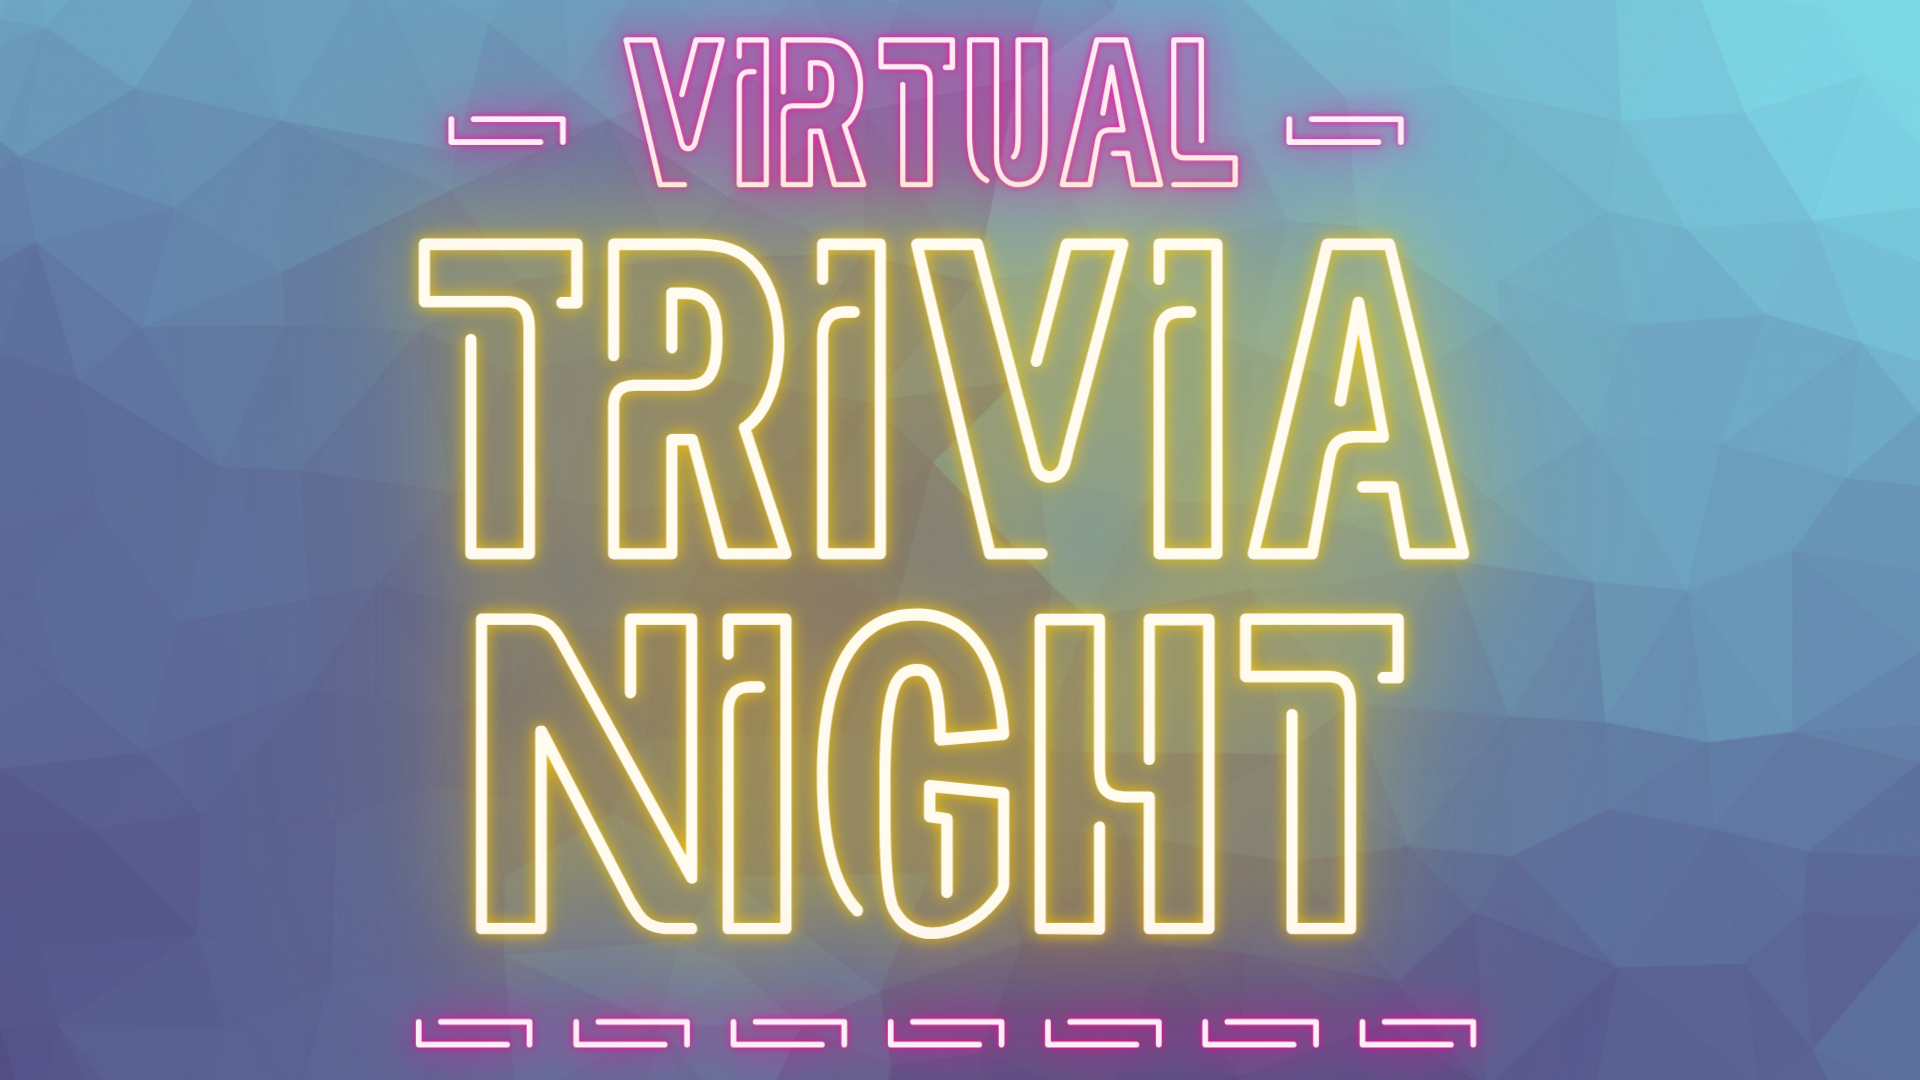 Virtual Trivia Night 